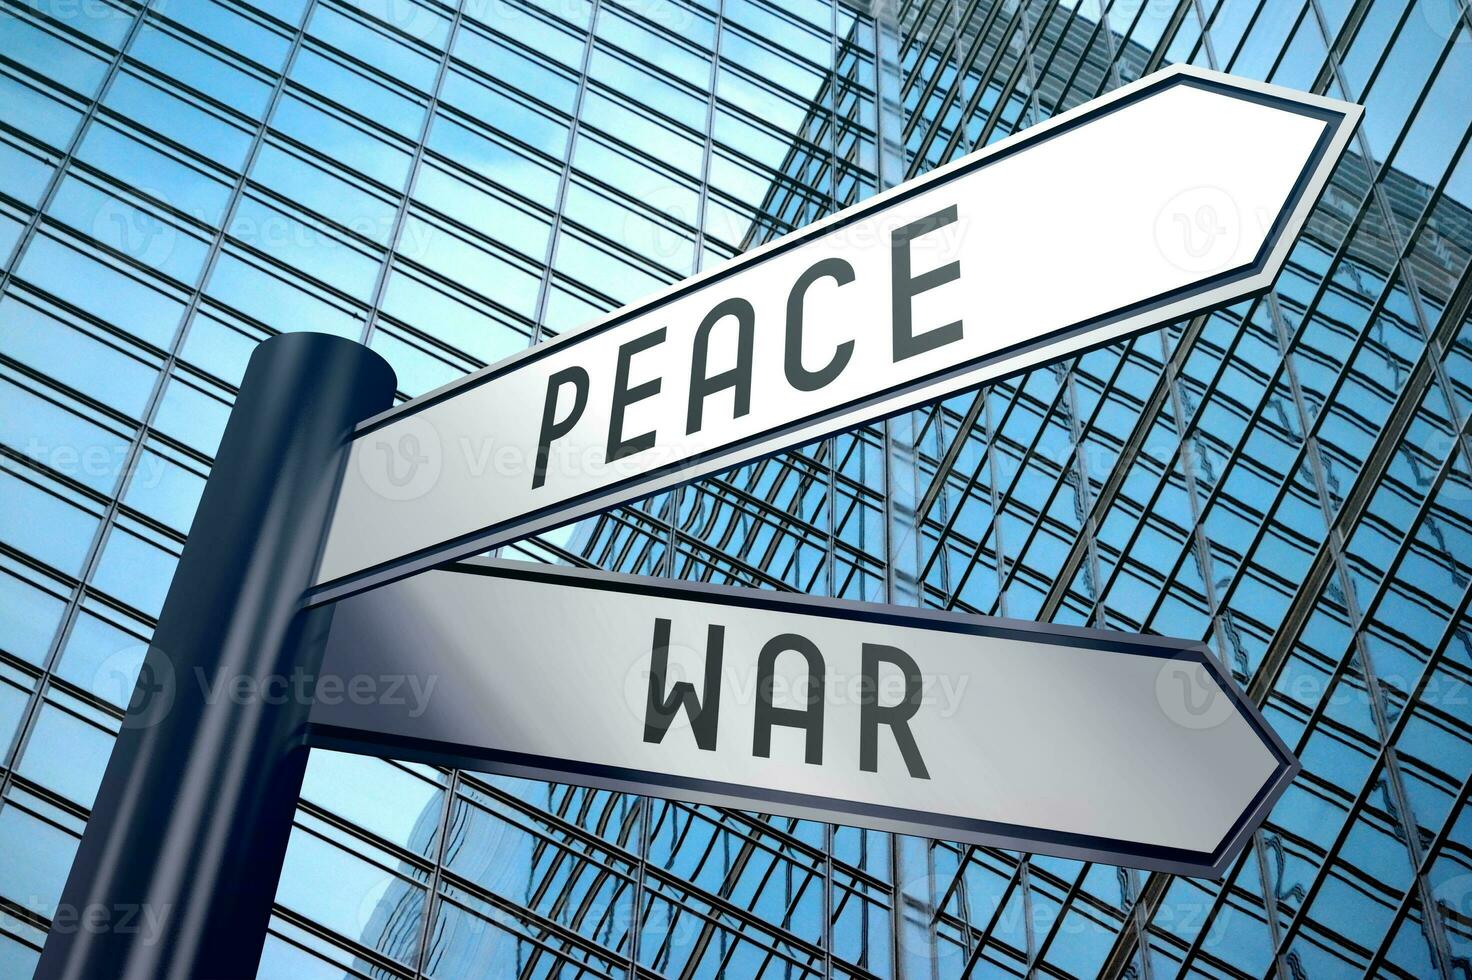 oorlog en vrede - wegwijzer met twee pijlen, kantoor gebouw in achtergrond foto